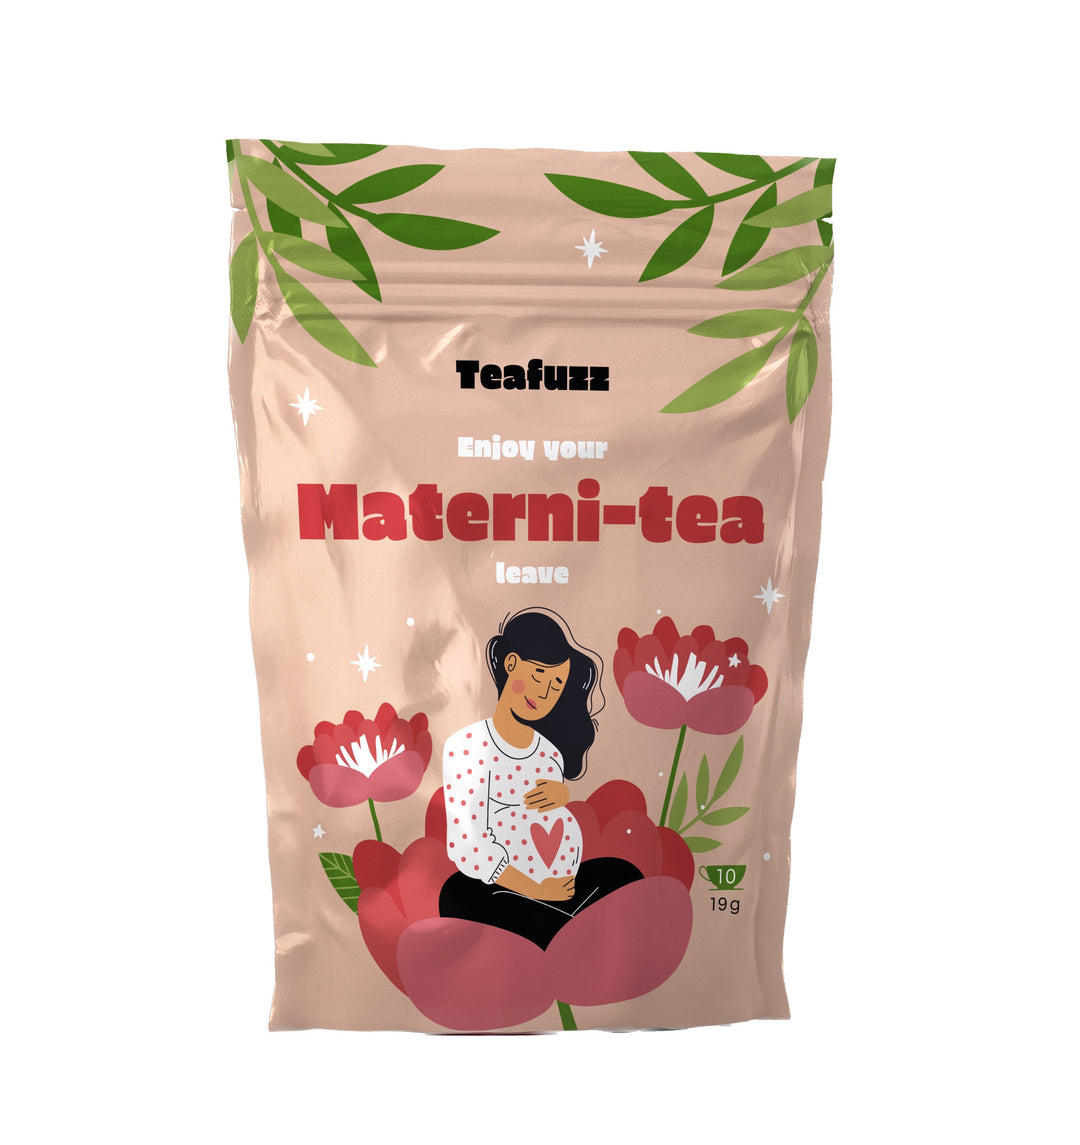 Materni tea